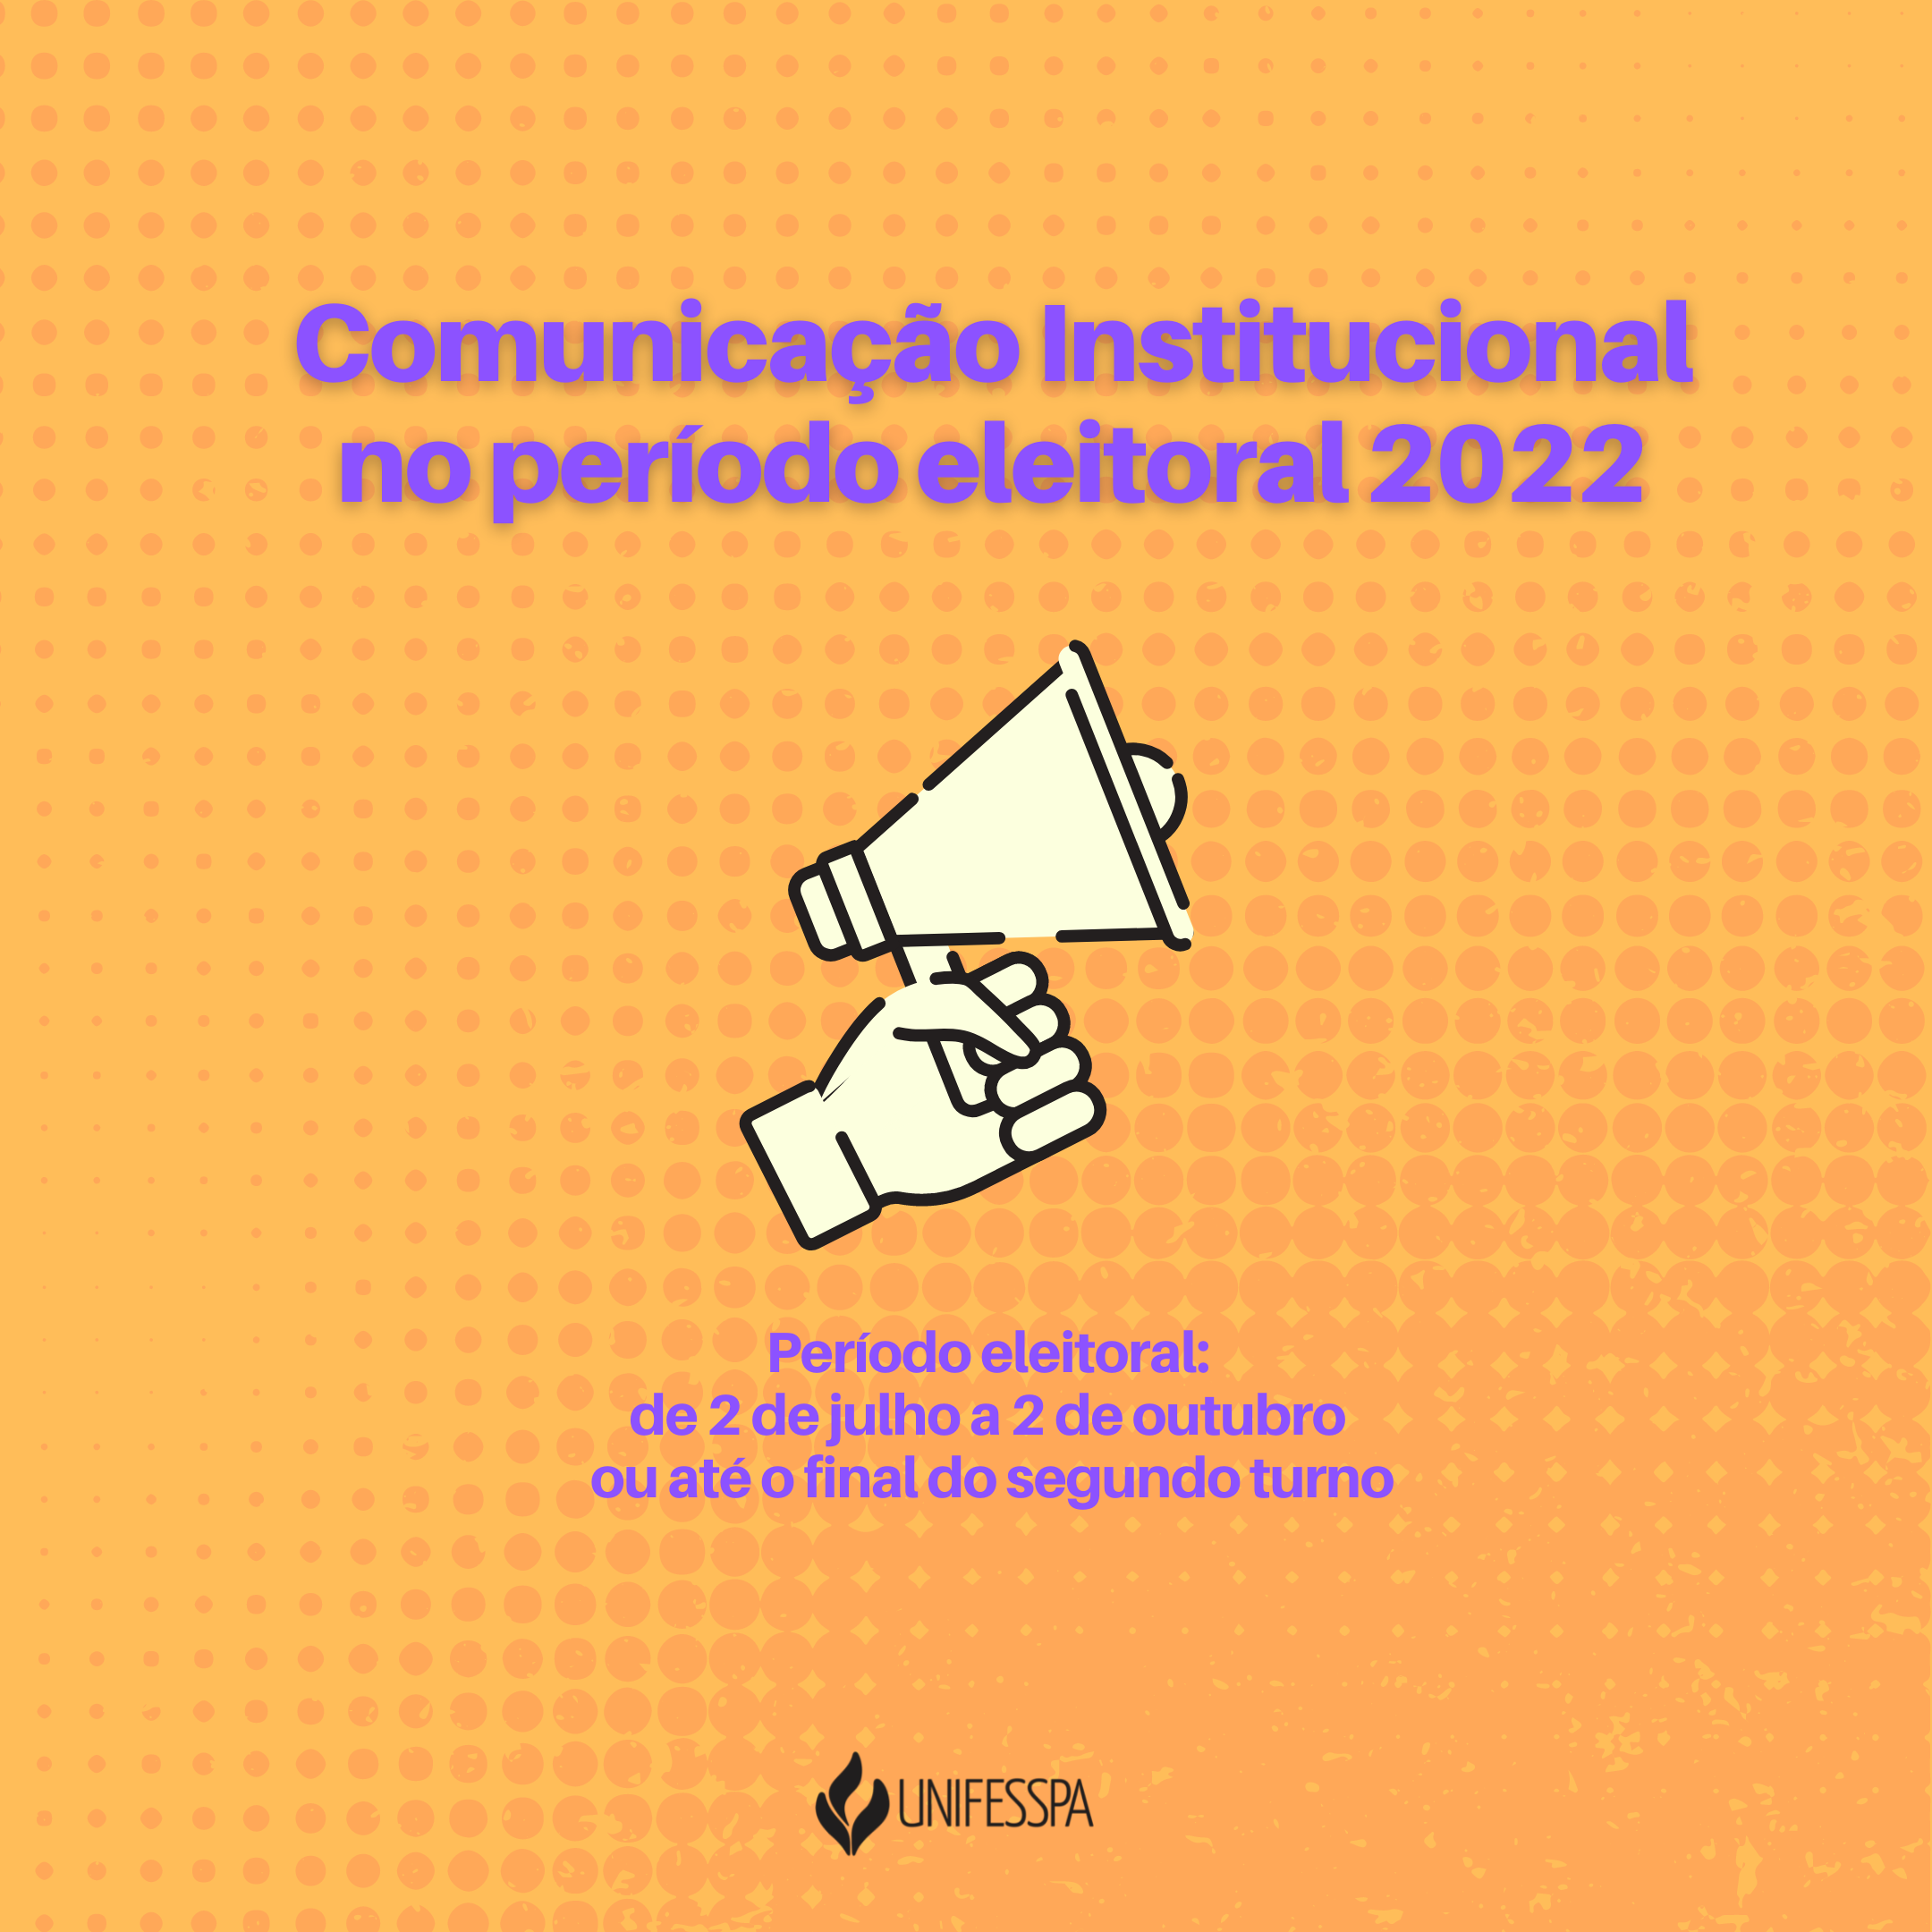 Comunicação Intitucional no período eleitoral 2022